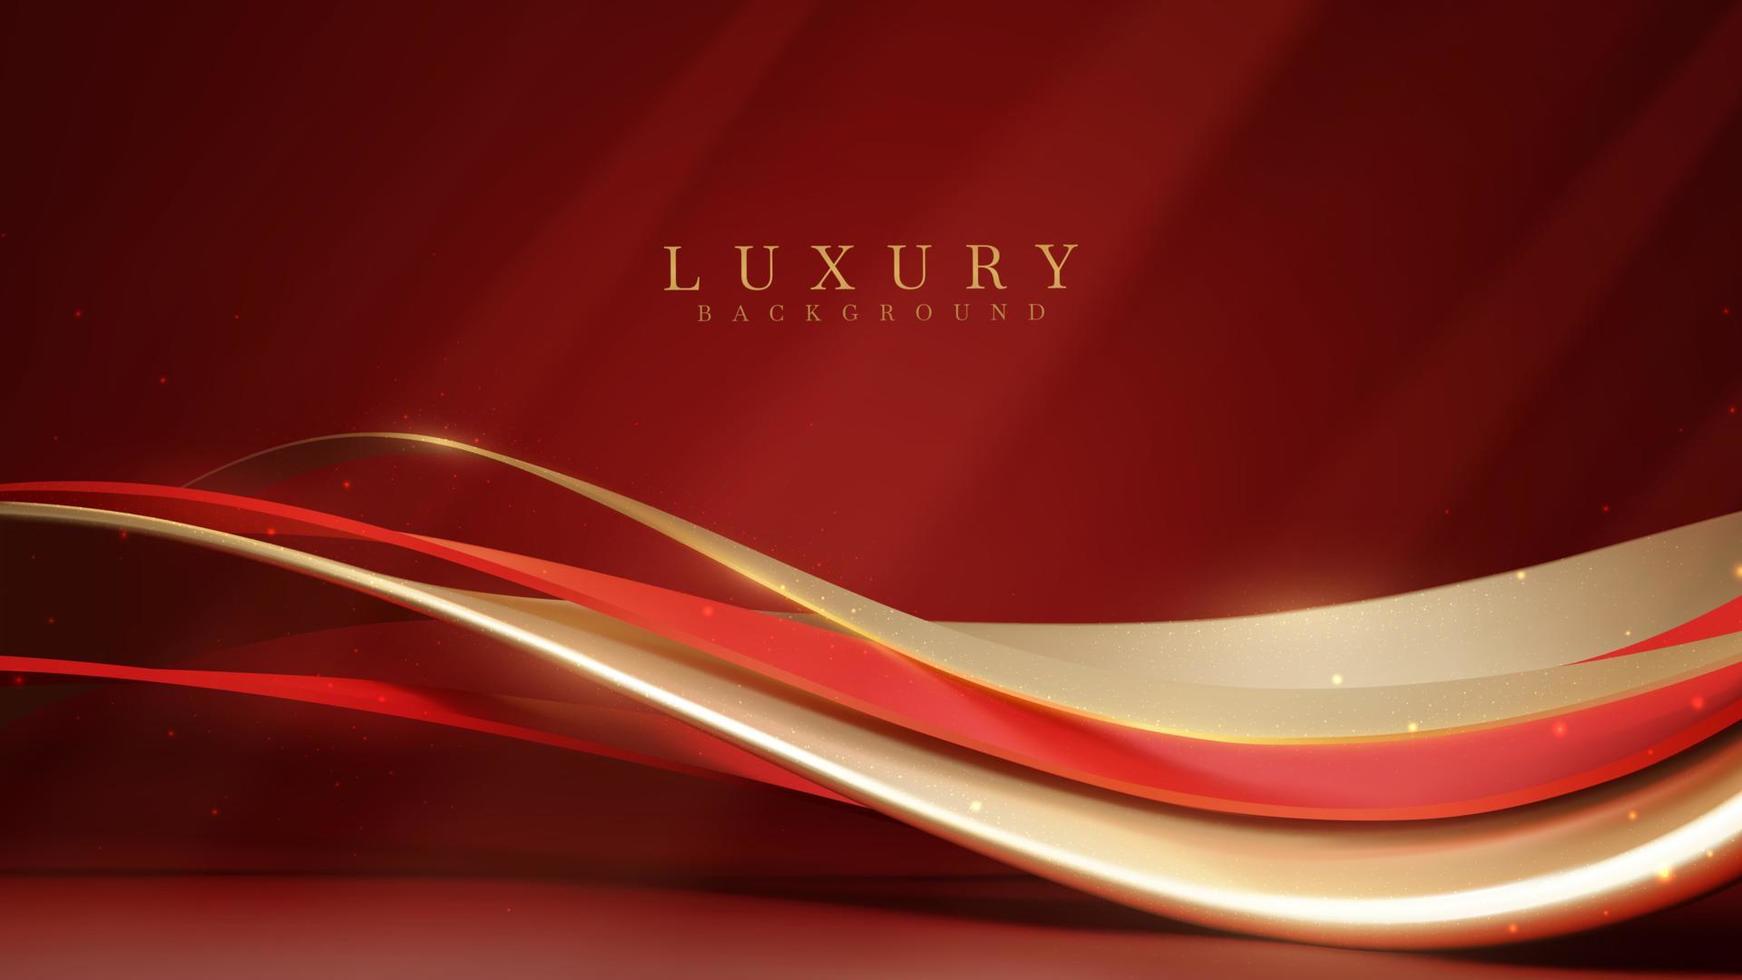 fond de luxe rouge avec décoration courbe dorée avec éléments à effet de lumière scintillante et bokeh. vecteur